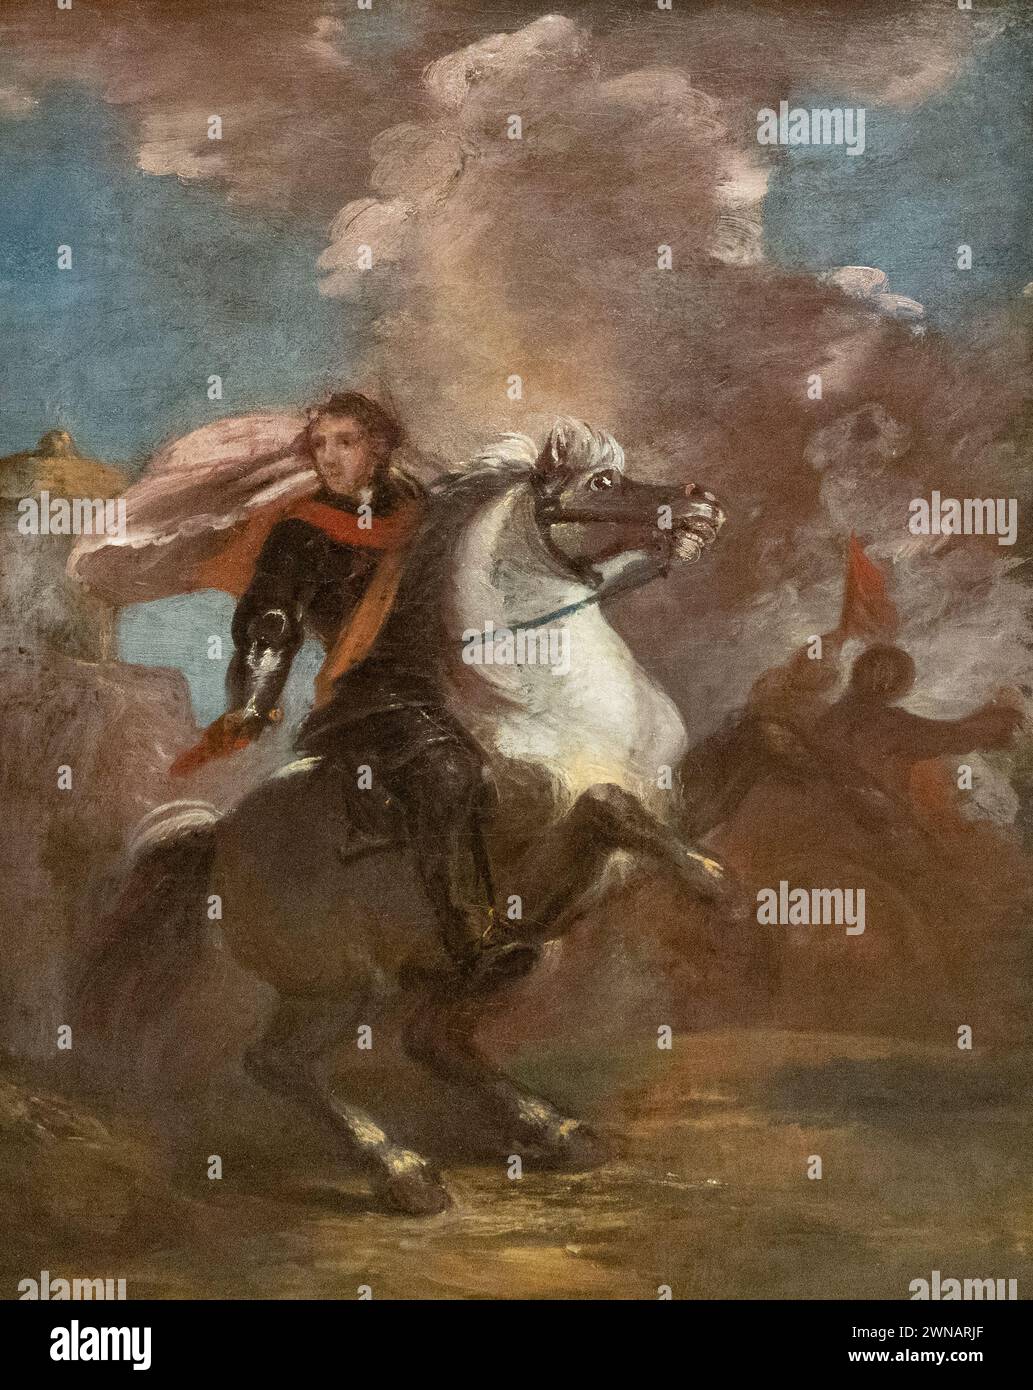 Sir Joshua Reynolds Painting, 'an Officer on Horseback' 1760-65, étude pour un portrait équestre. XVIIIe siècle, portraitiste anglais, 1723-1792. Banque D'Images